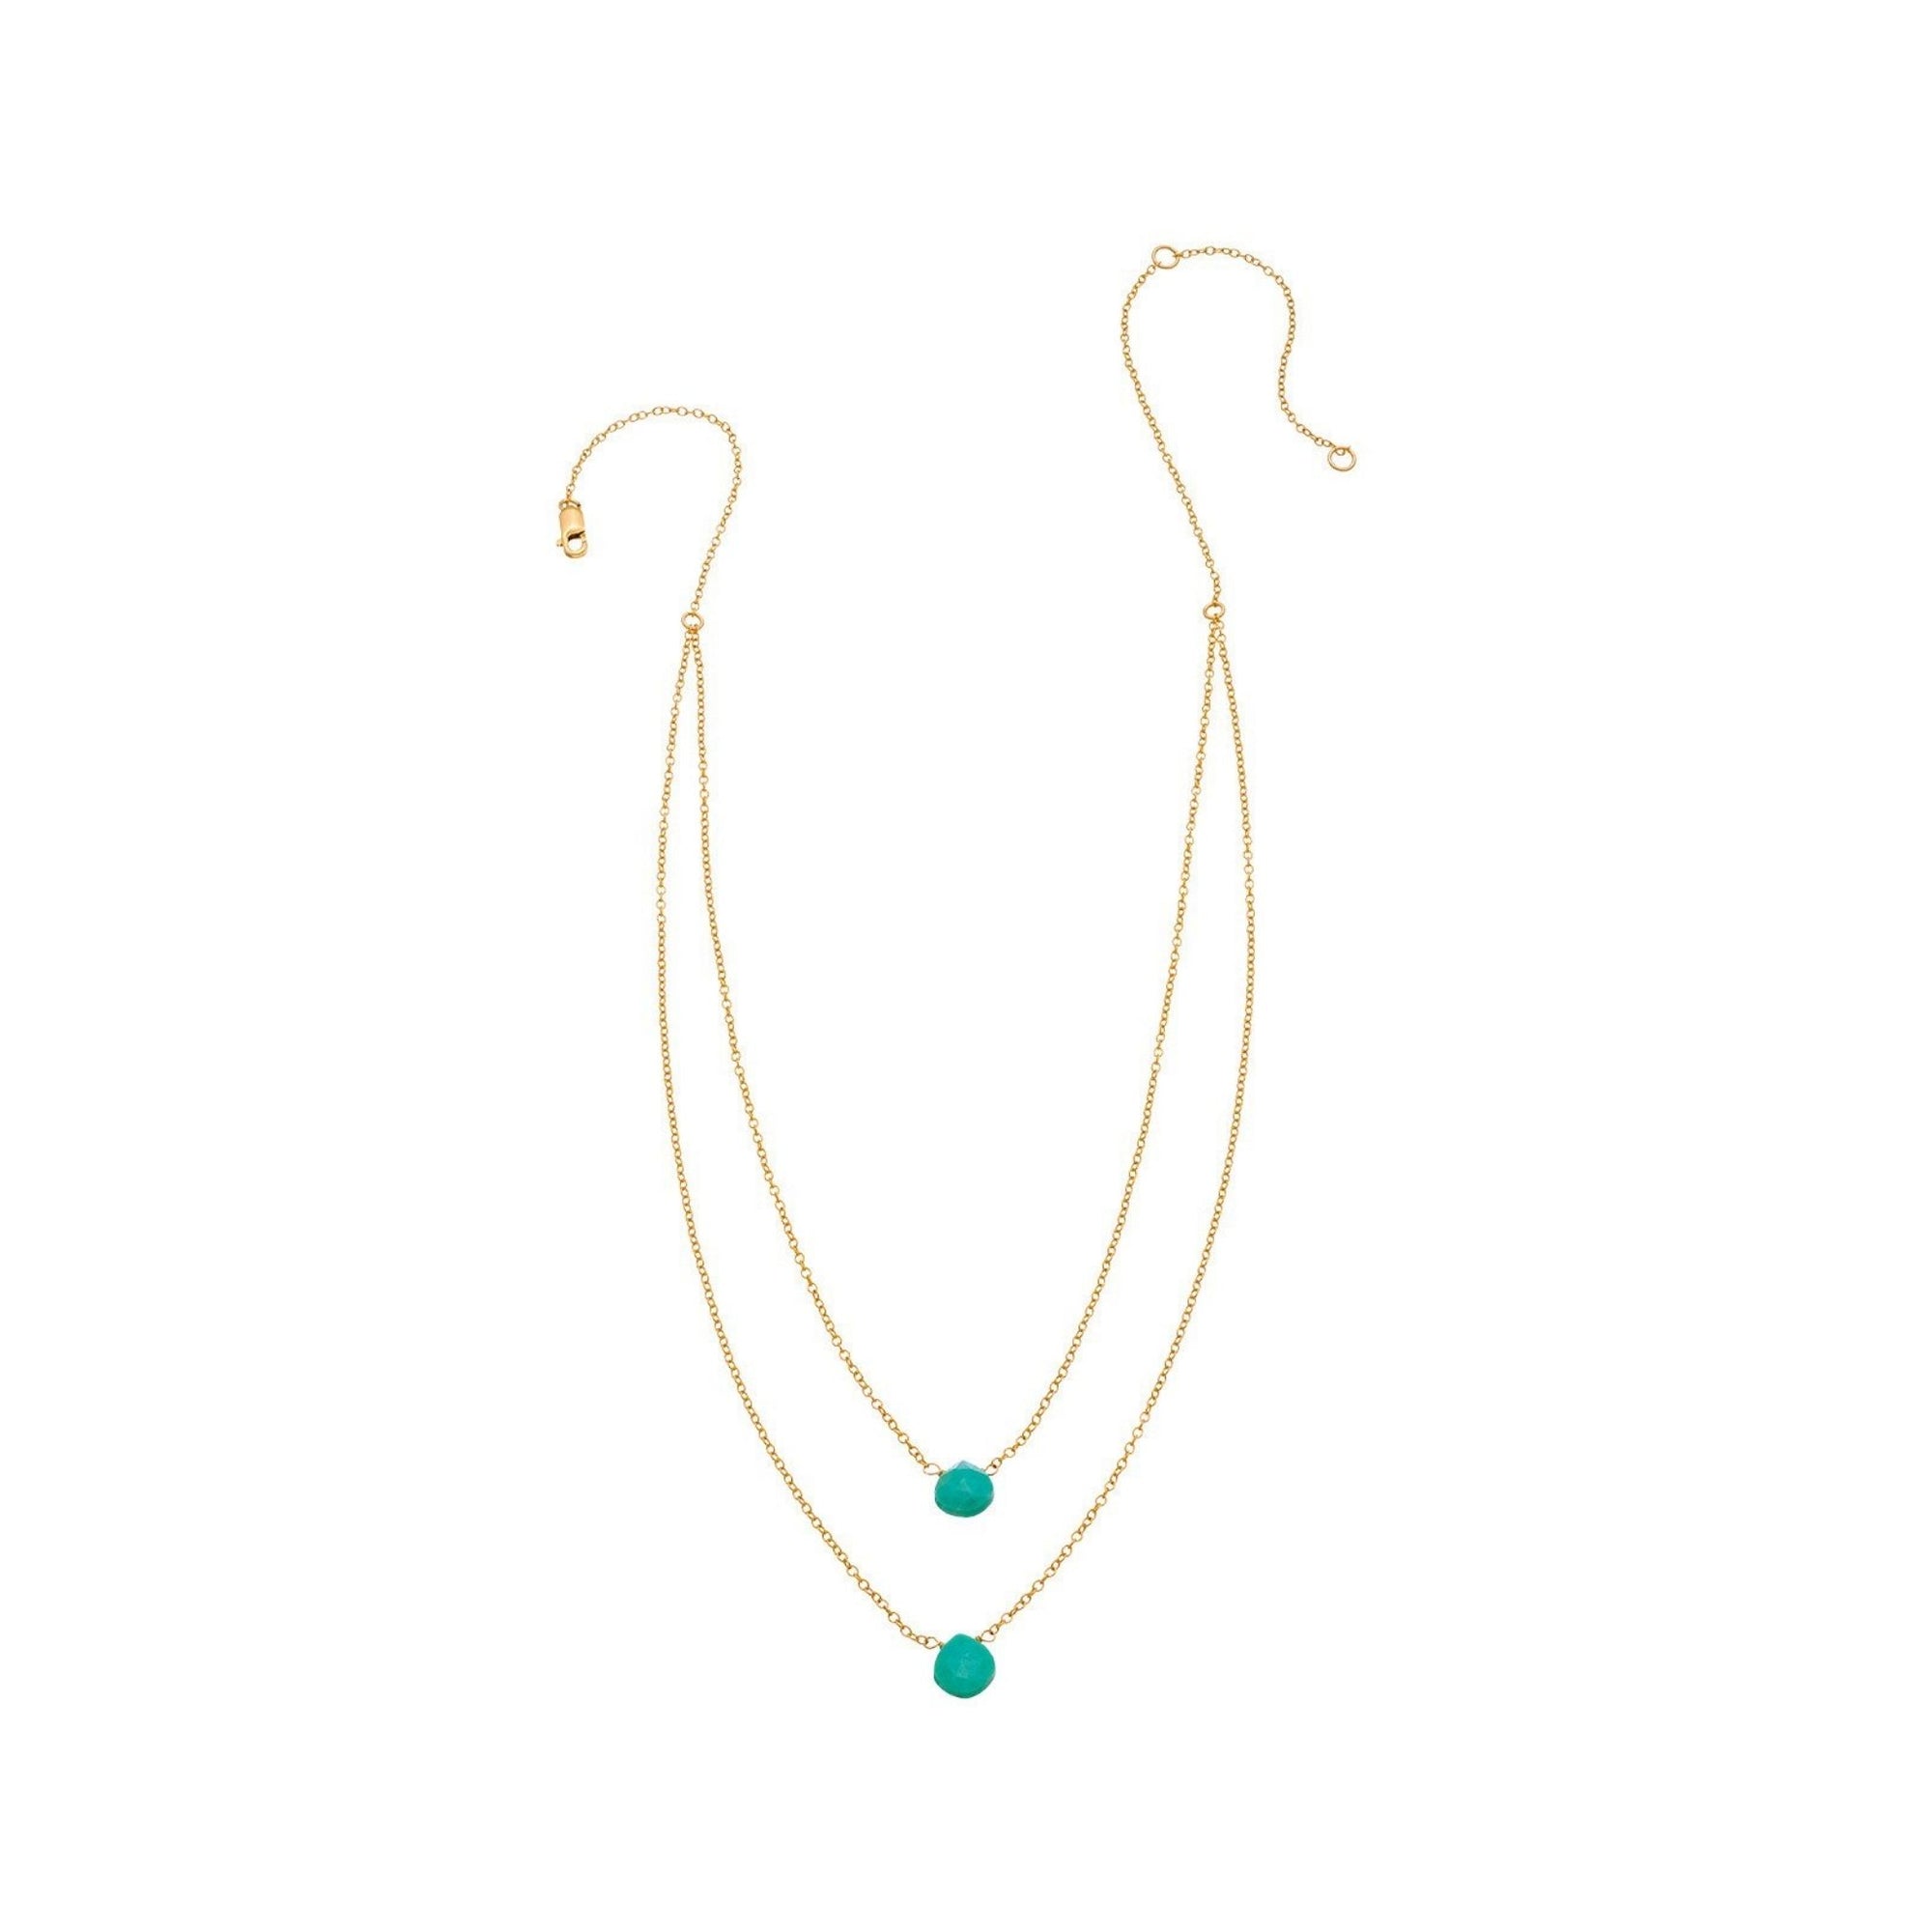 2 Tiny Turquoise Gemstones Drape Necklace